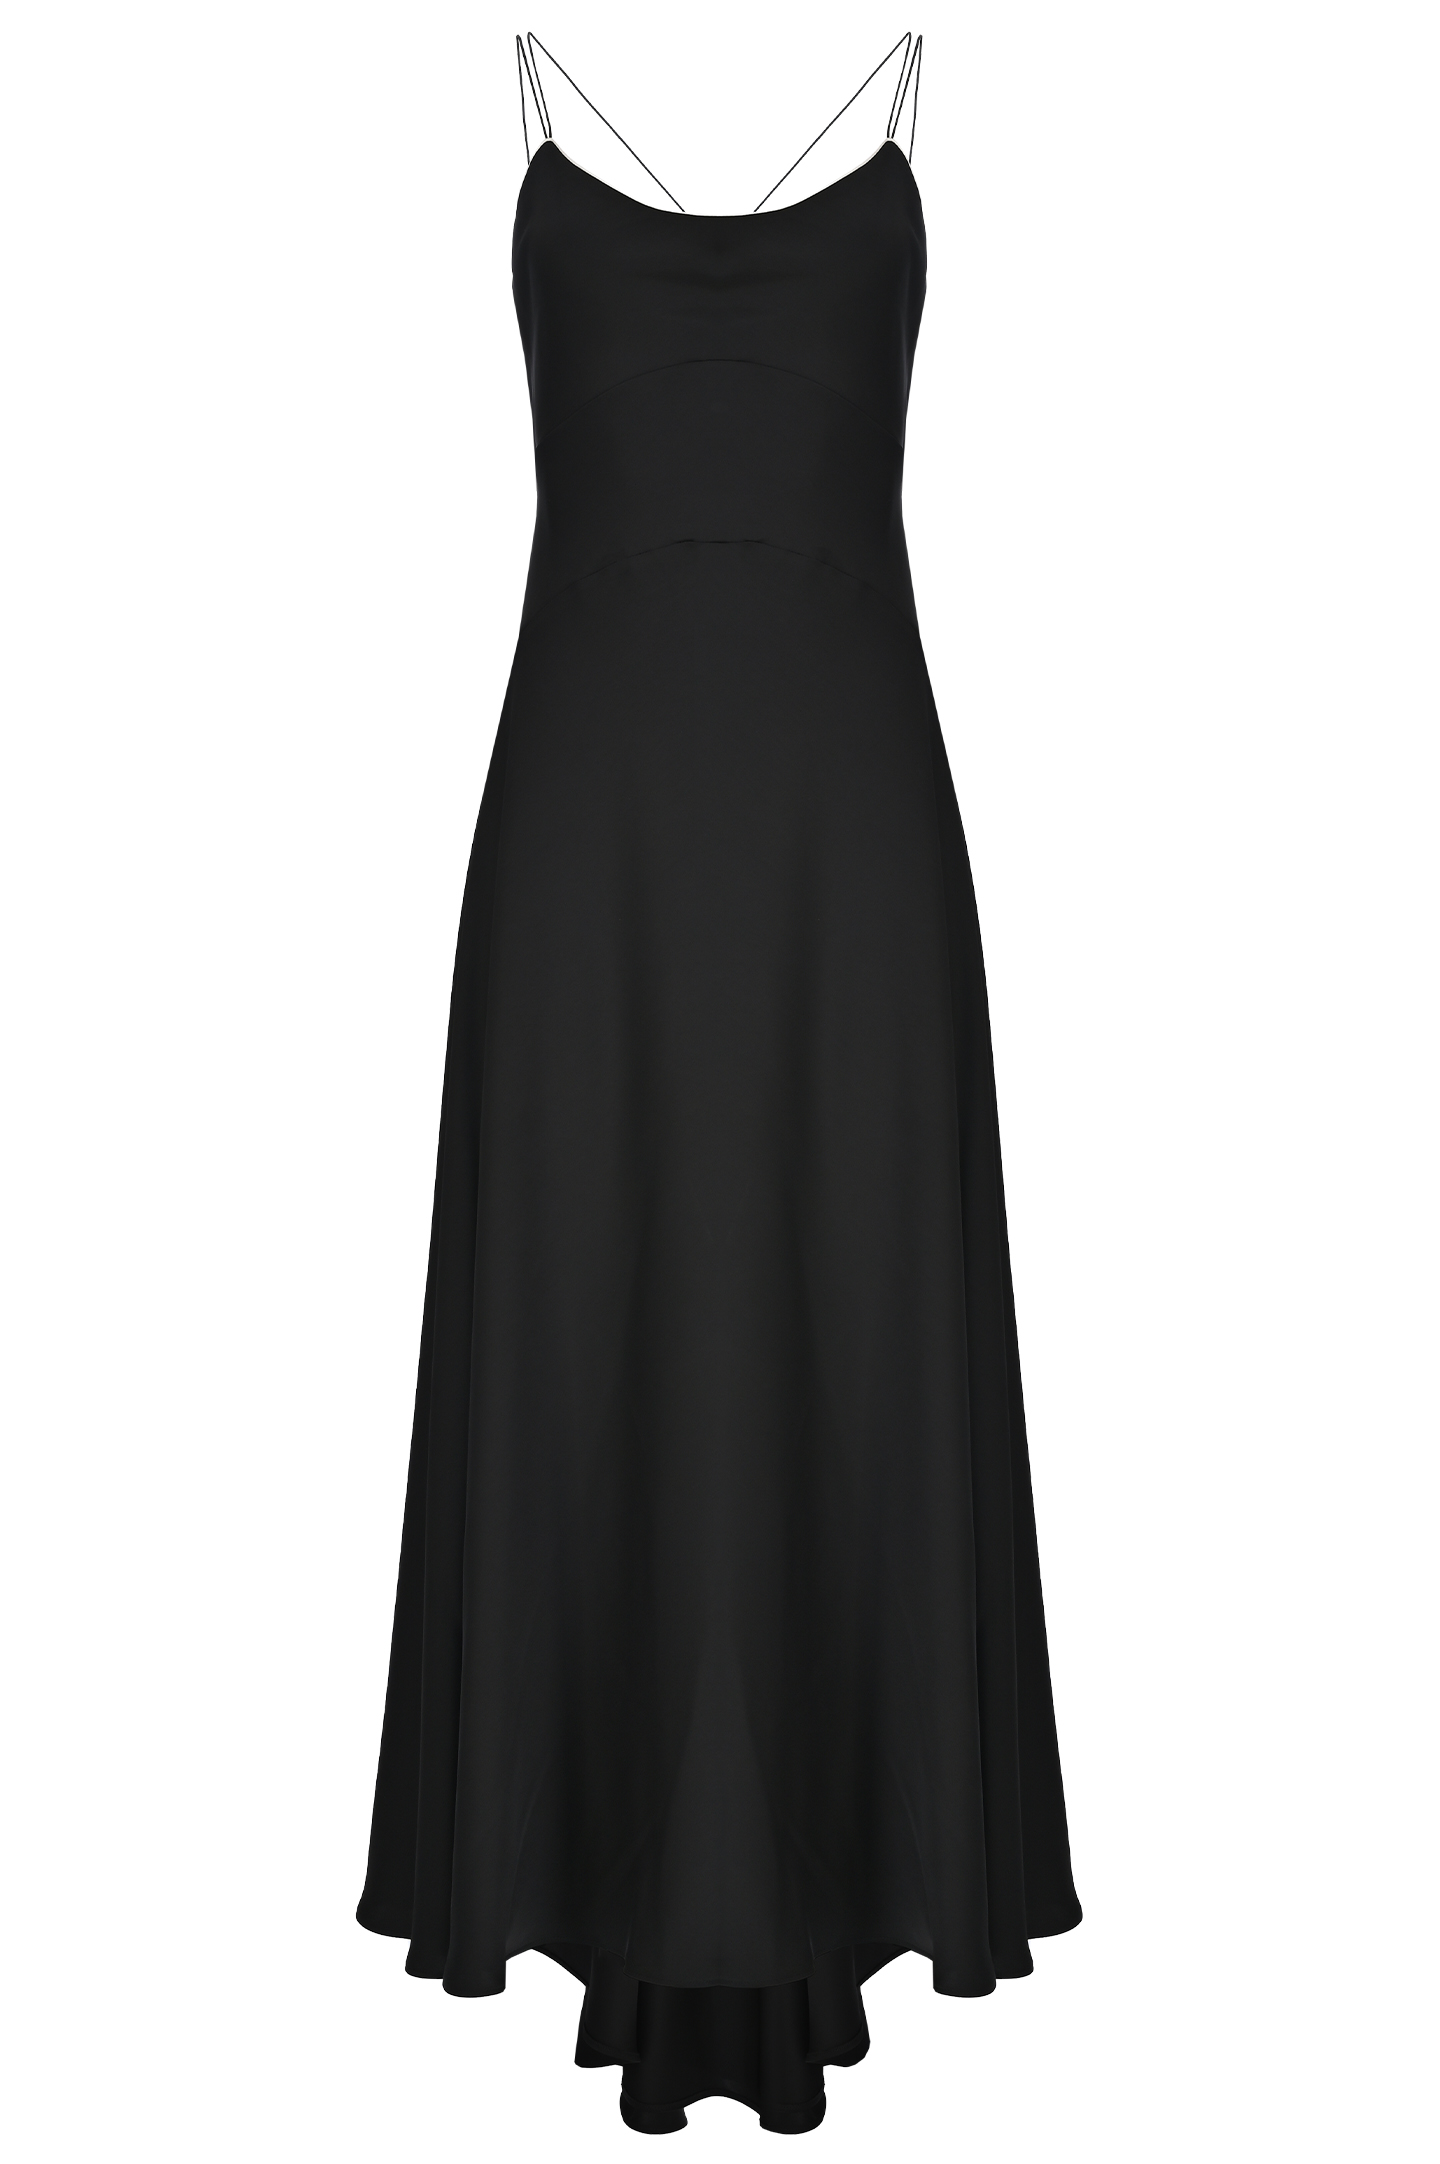 Платье PHILOSOPHY DI LORENZO SERAFINI A0440 7122, цвет: Черный, Женский